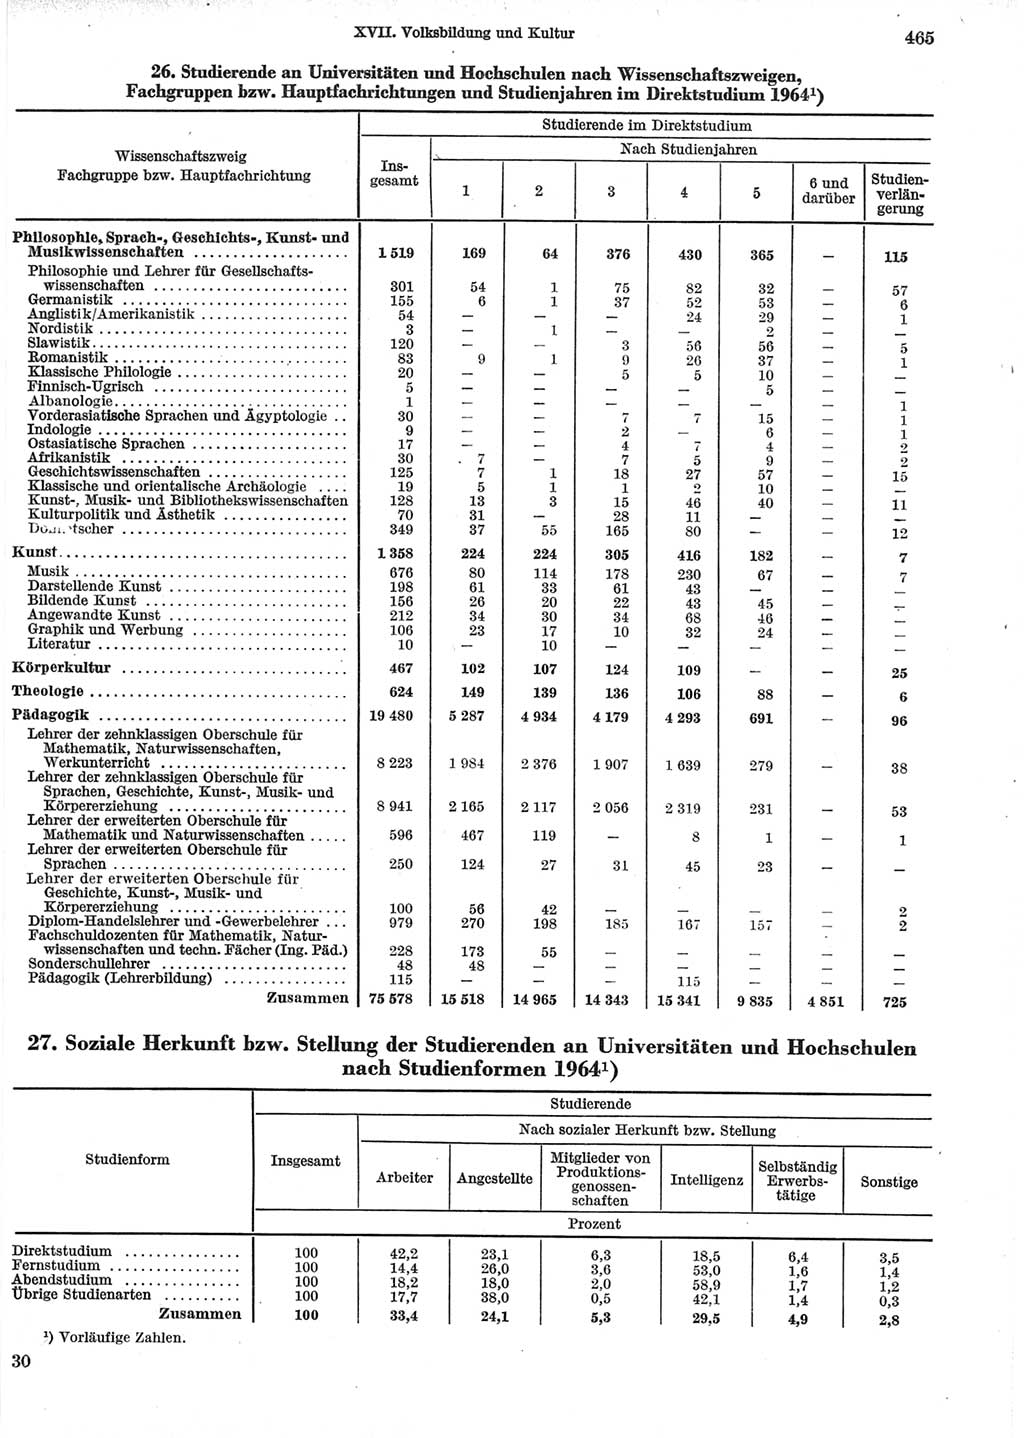 Statistisches Jahrbuch der Deutschen Demokratischen Republik (DDR) 1965, Seite 465 (Stat. Jb. DDR 1965, S. 465)